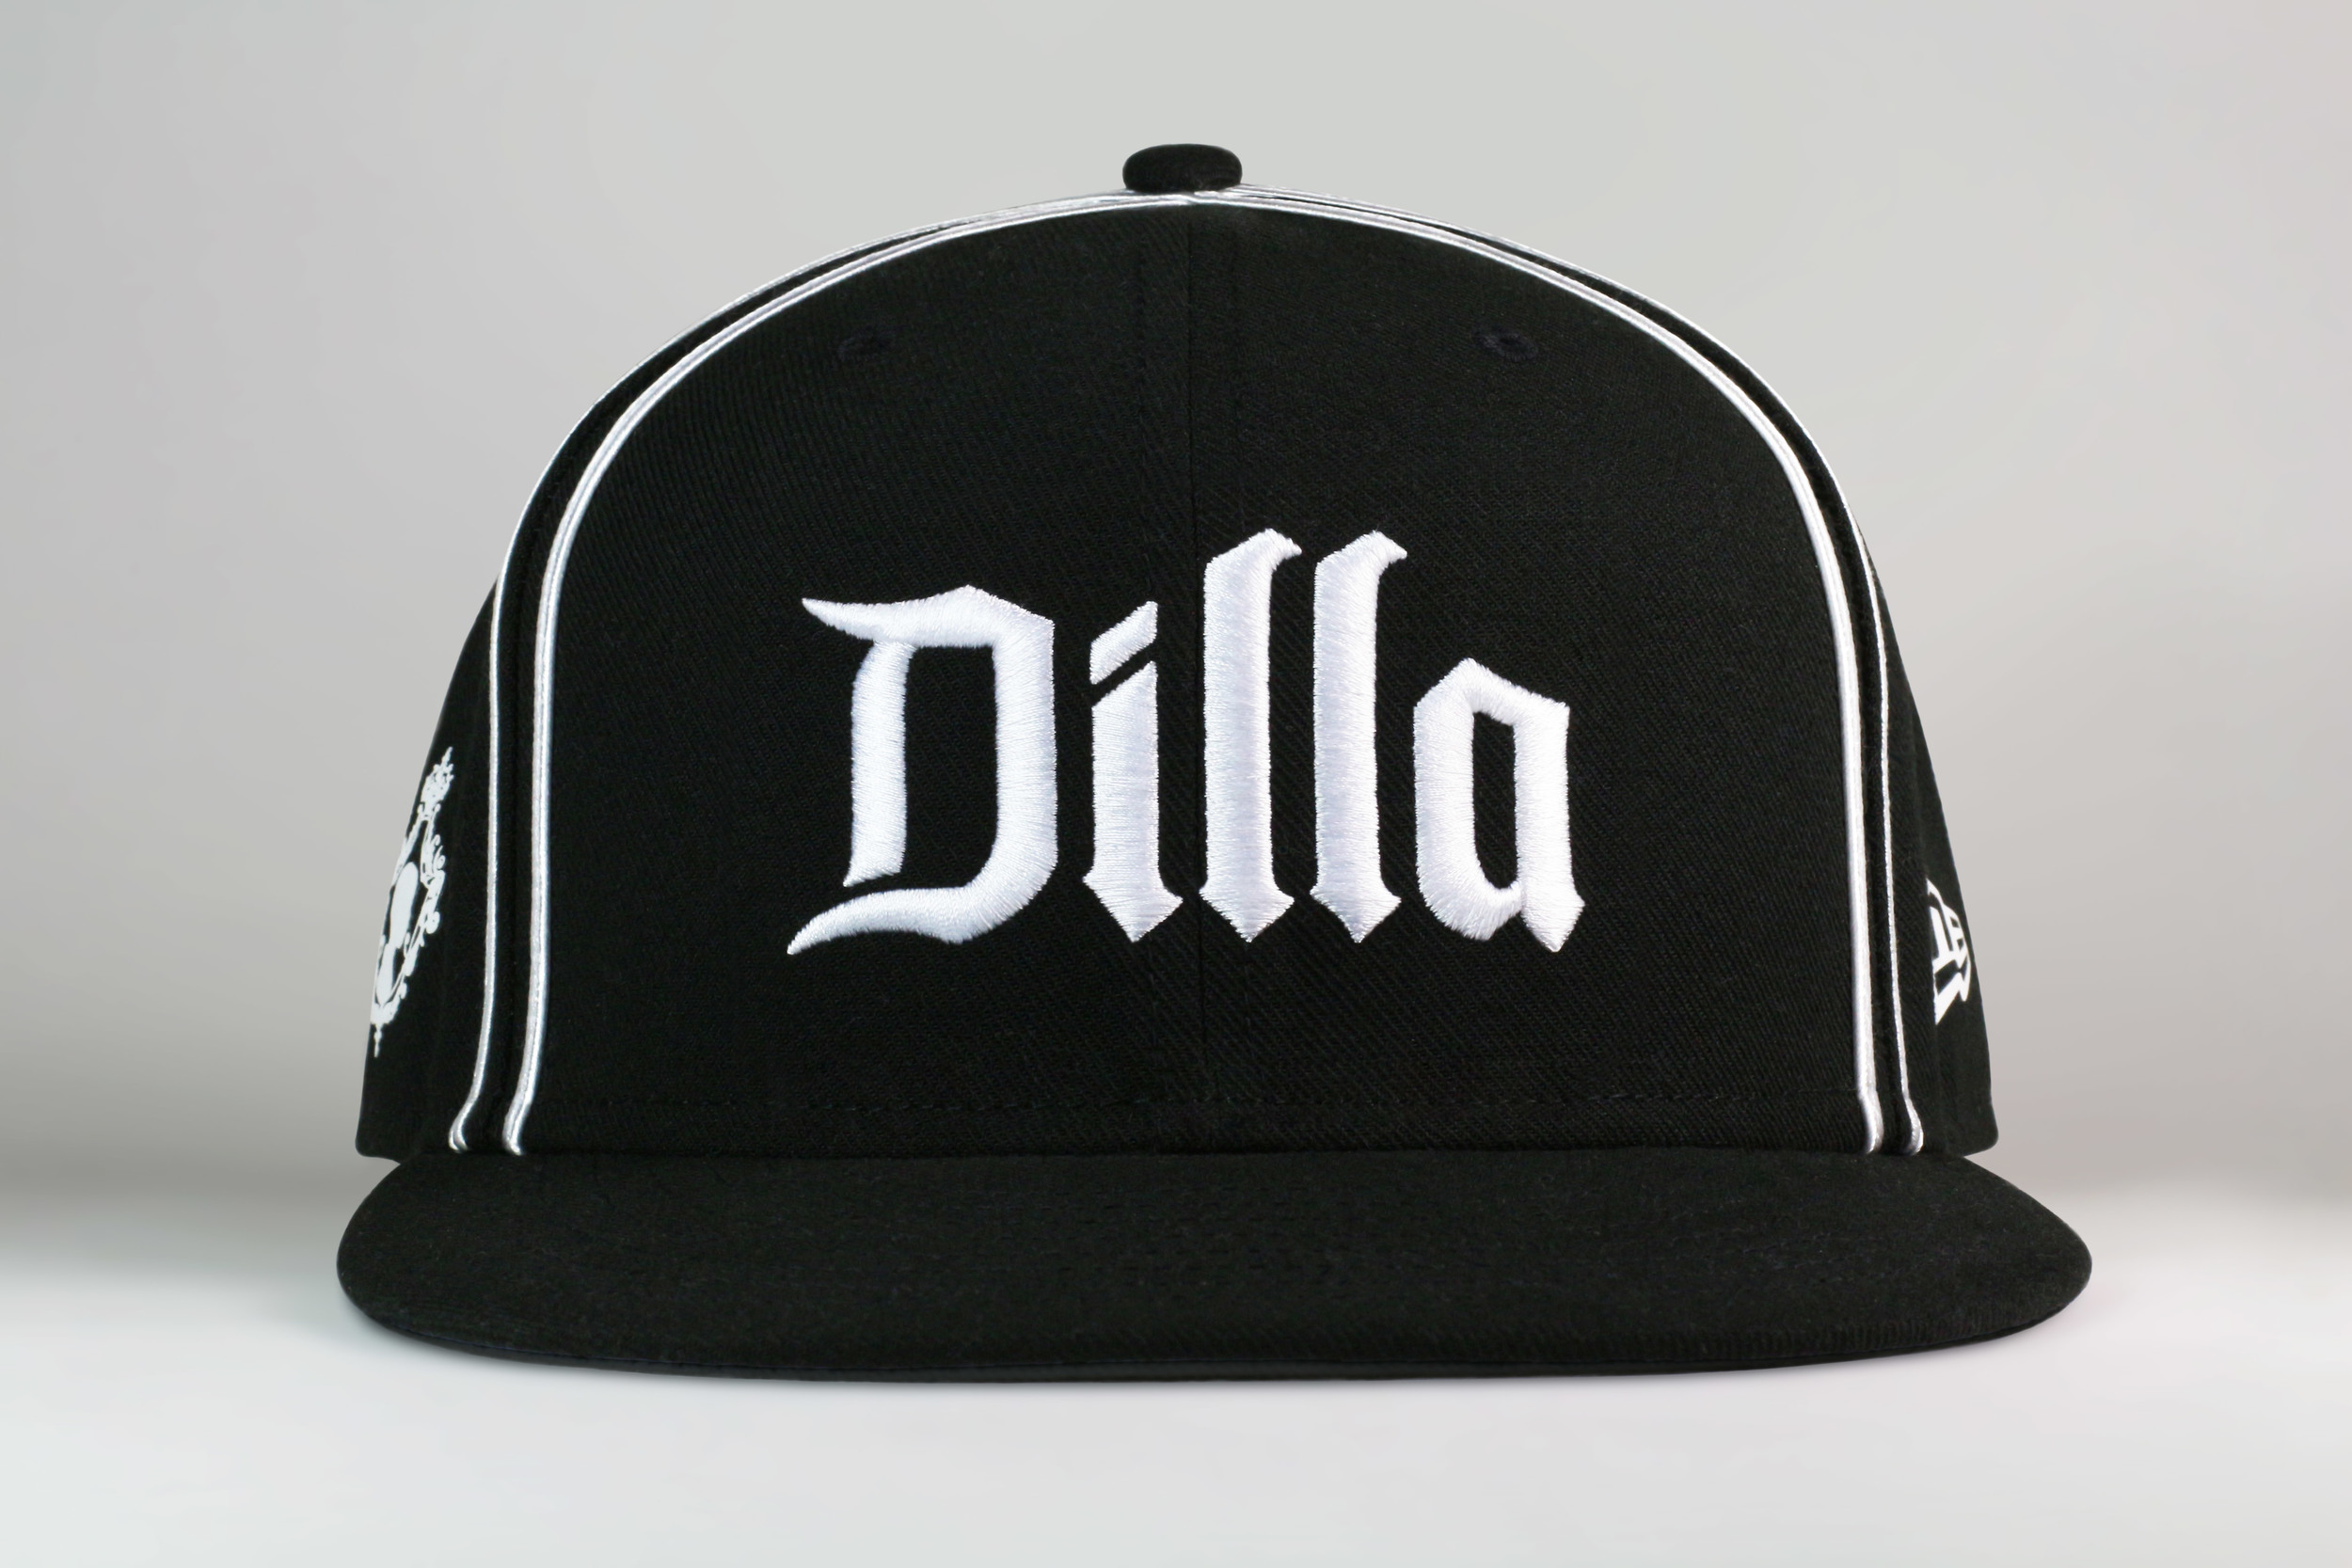 Black-Dilla-Hat-Front_MediumRes.jpg